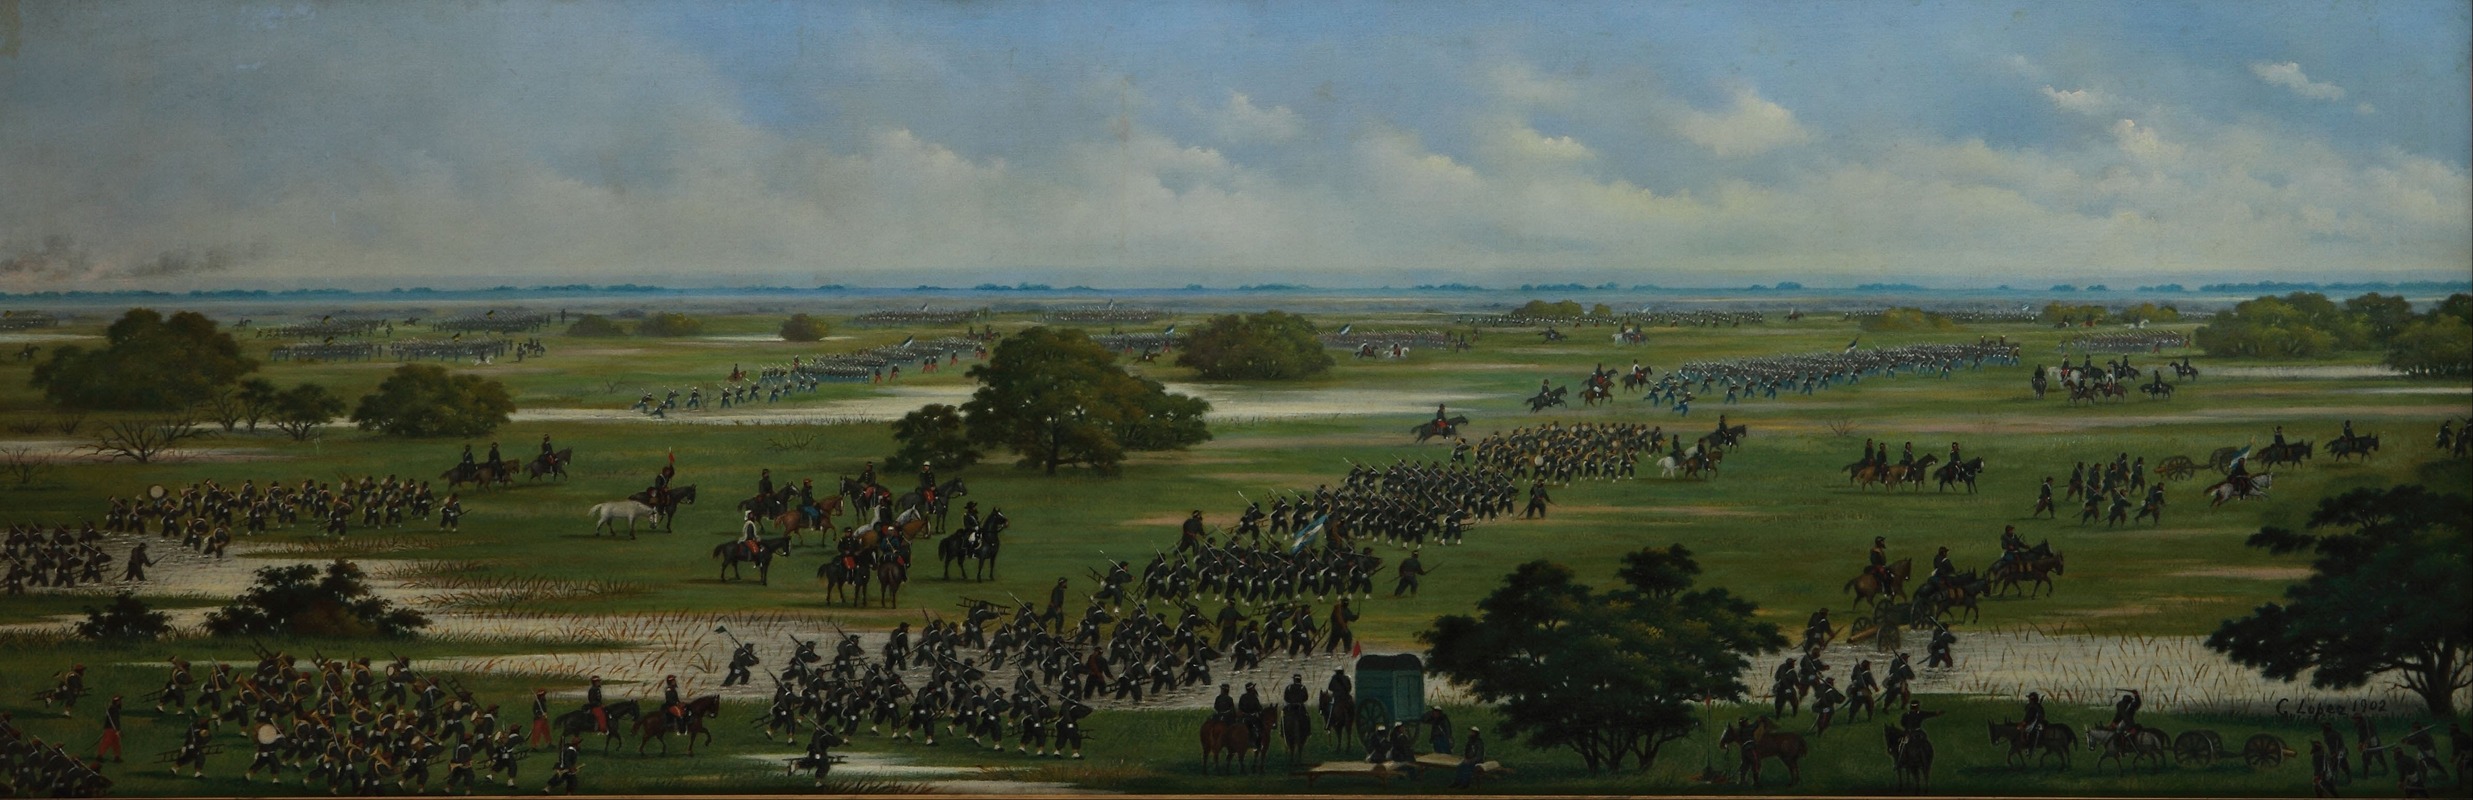 Cándido Lopez - Marcha del Ejército Argentino a tomar posiciones para el ataque a Curupaytí el 1866